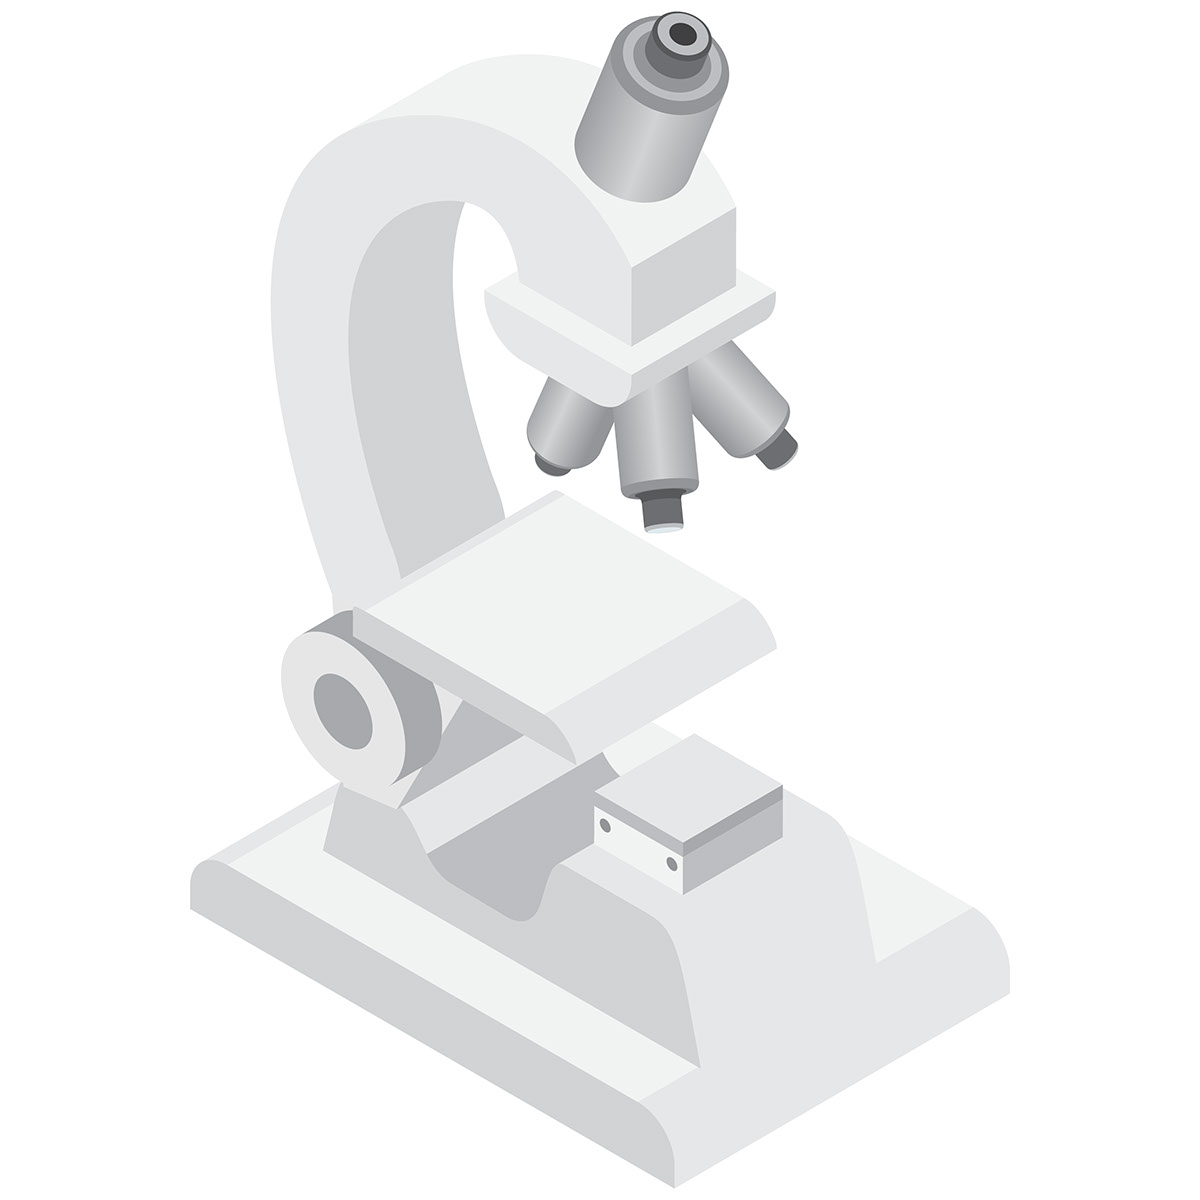 Isometric Microscope rendition image